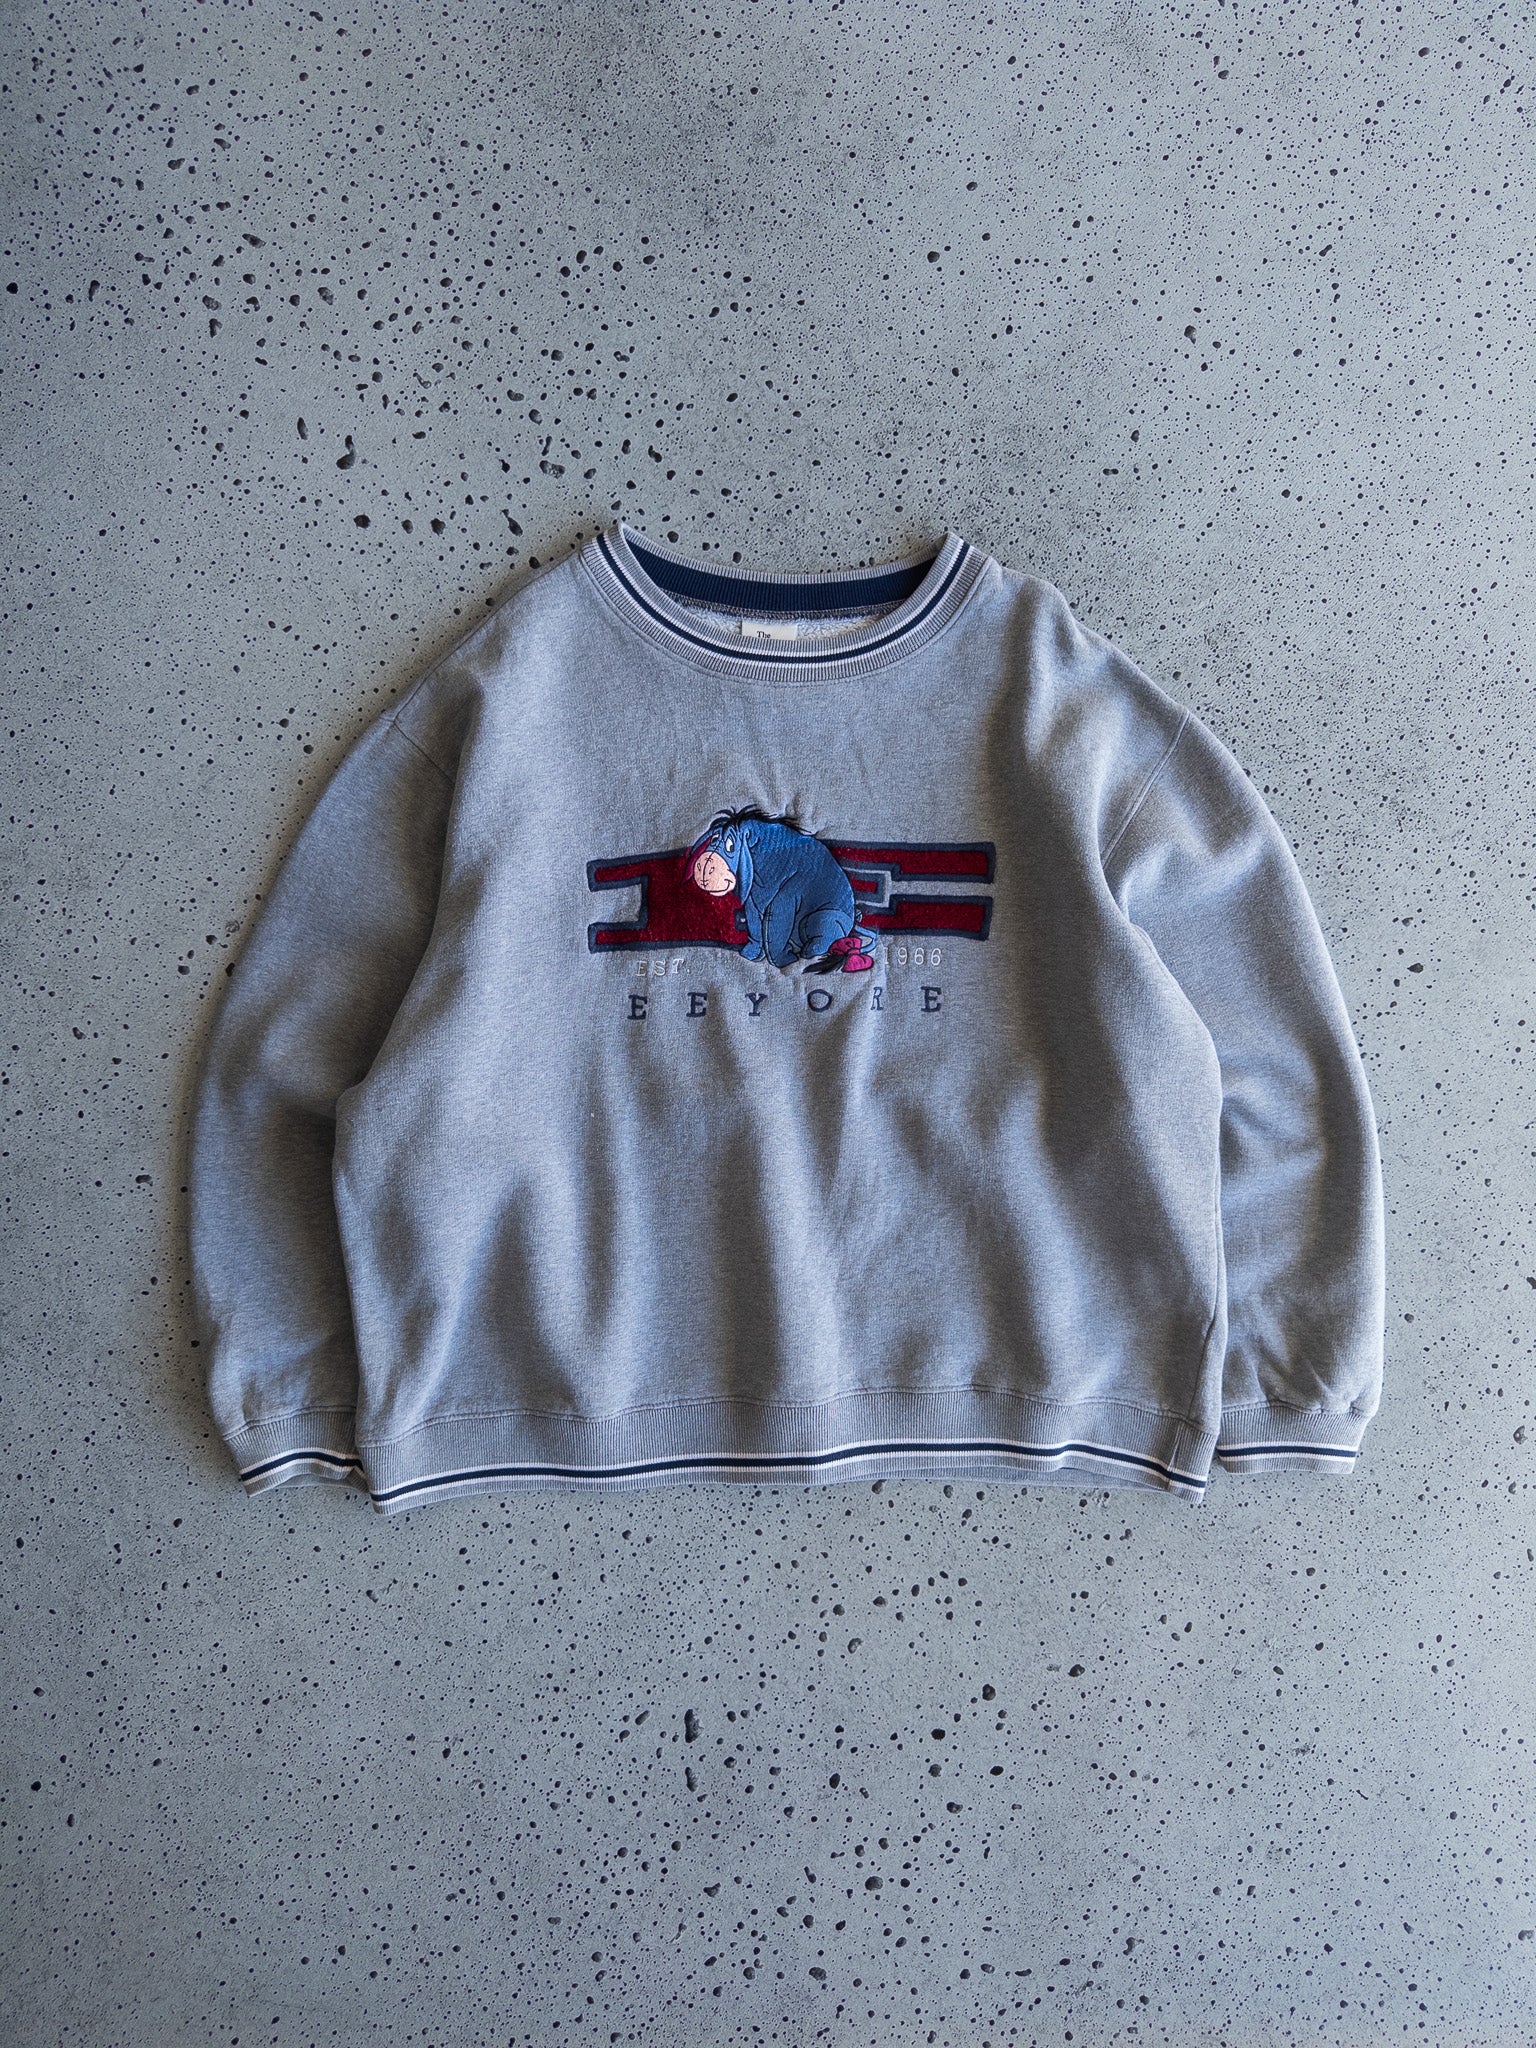 Vintage Eeyore Sweatshirt (L)